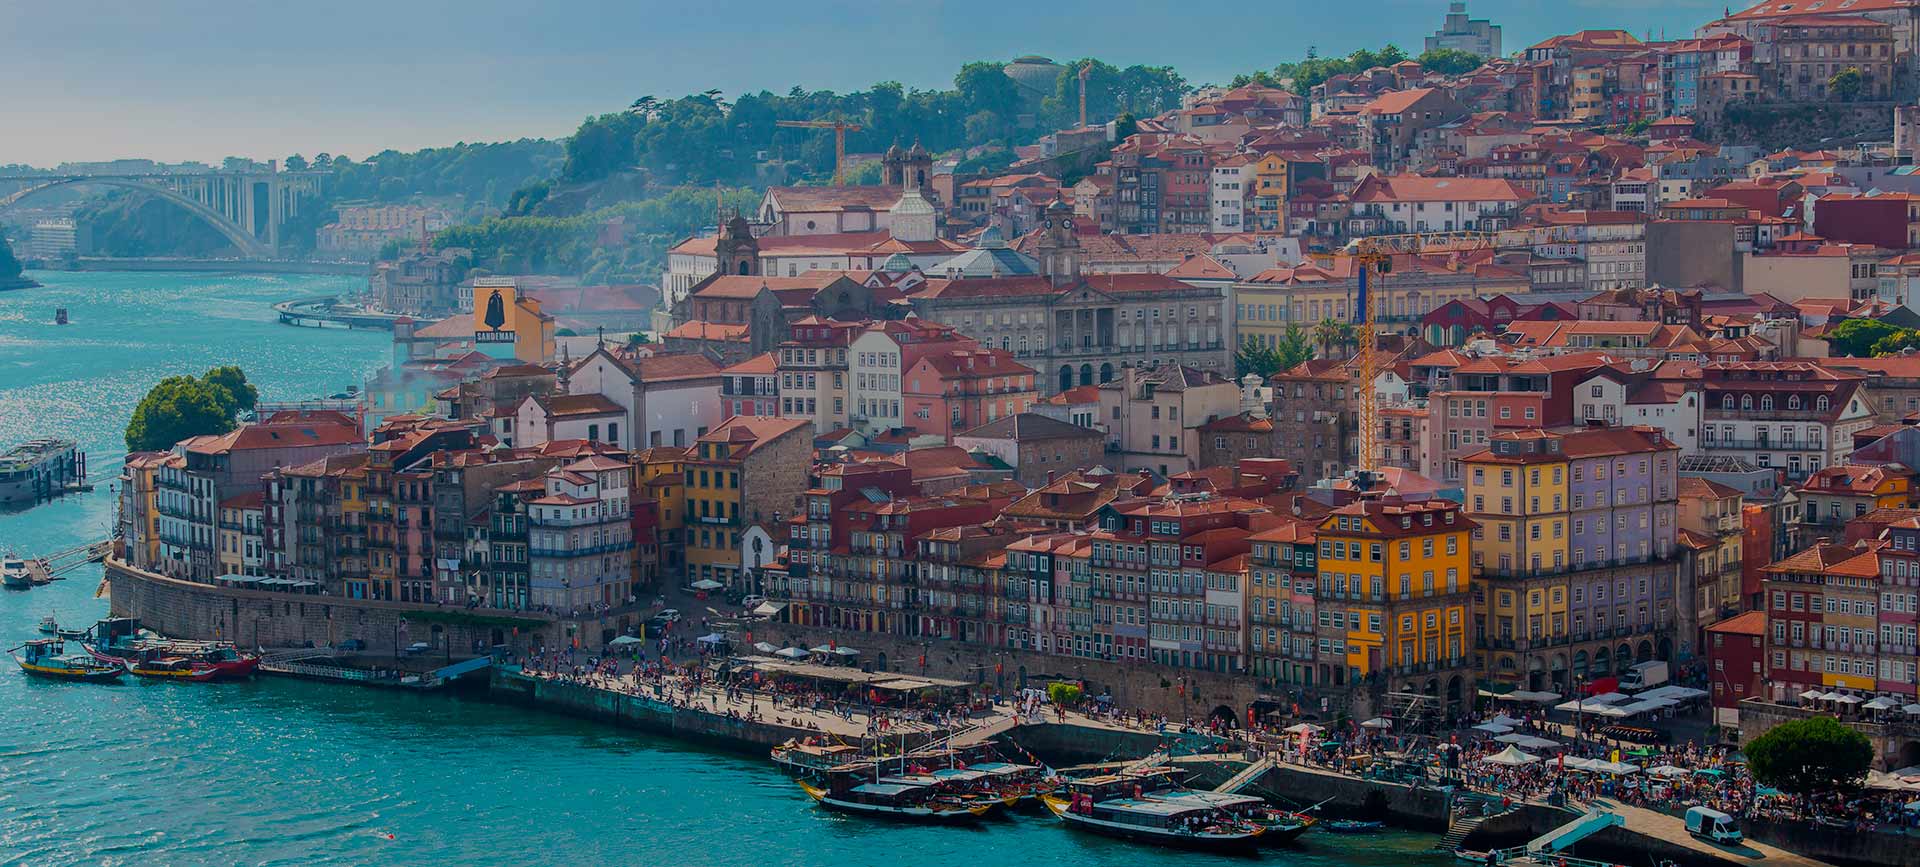 Viver e trabalhar no Porto: o dia perfeito na cidade